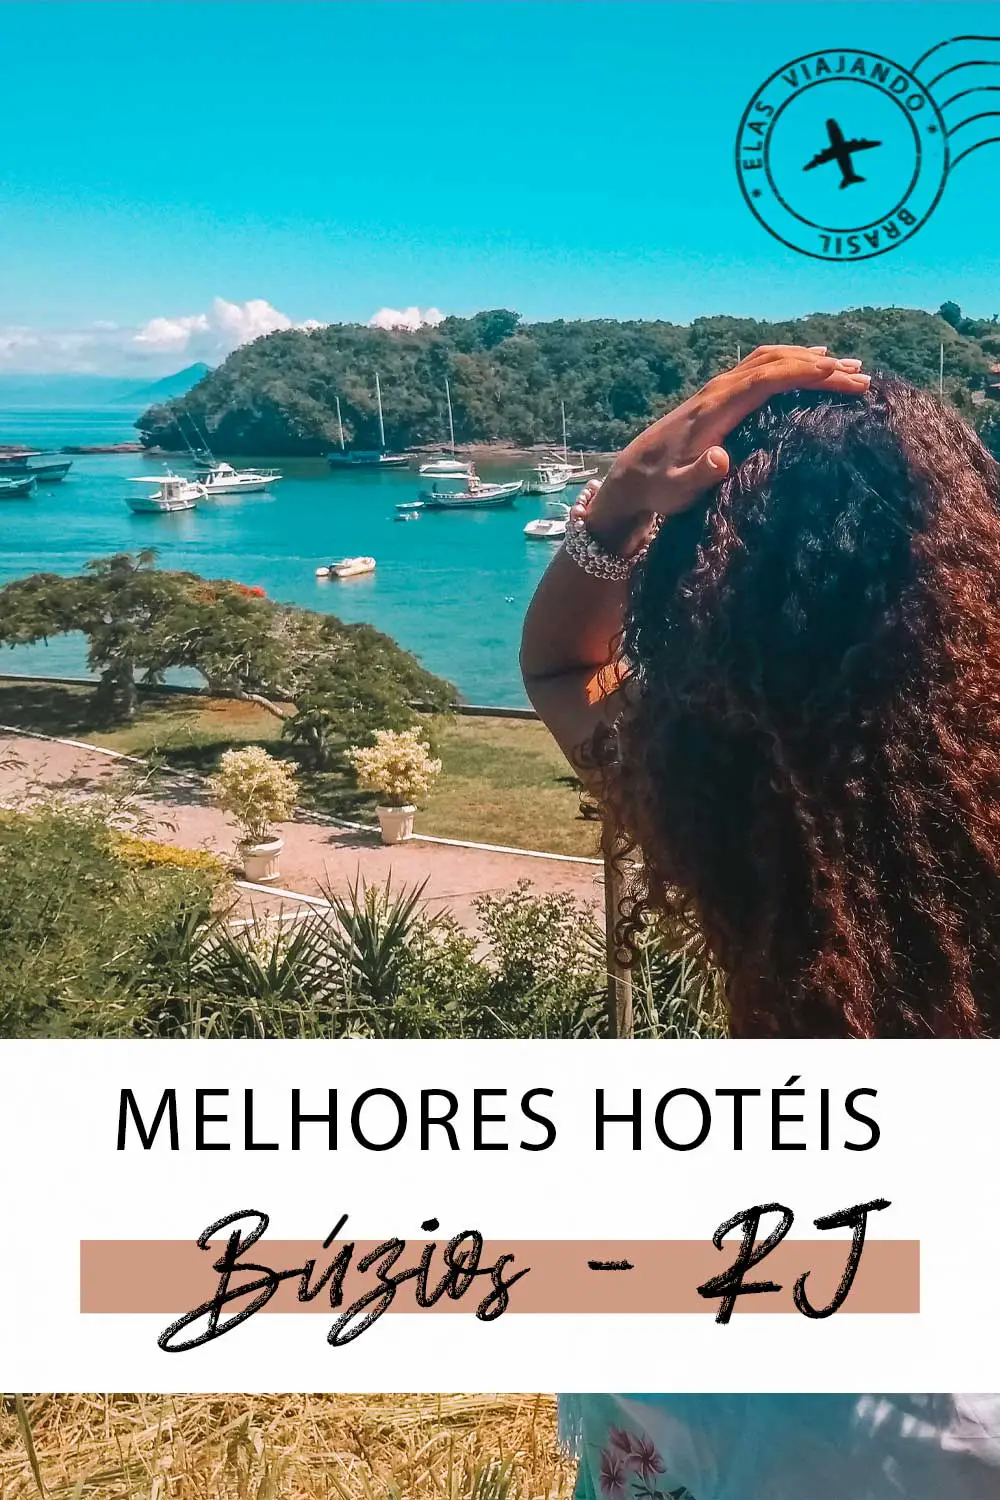 Melhores hotéis em Búzios no Rio de Janeiro